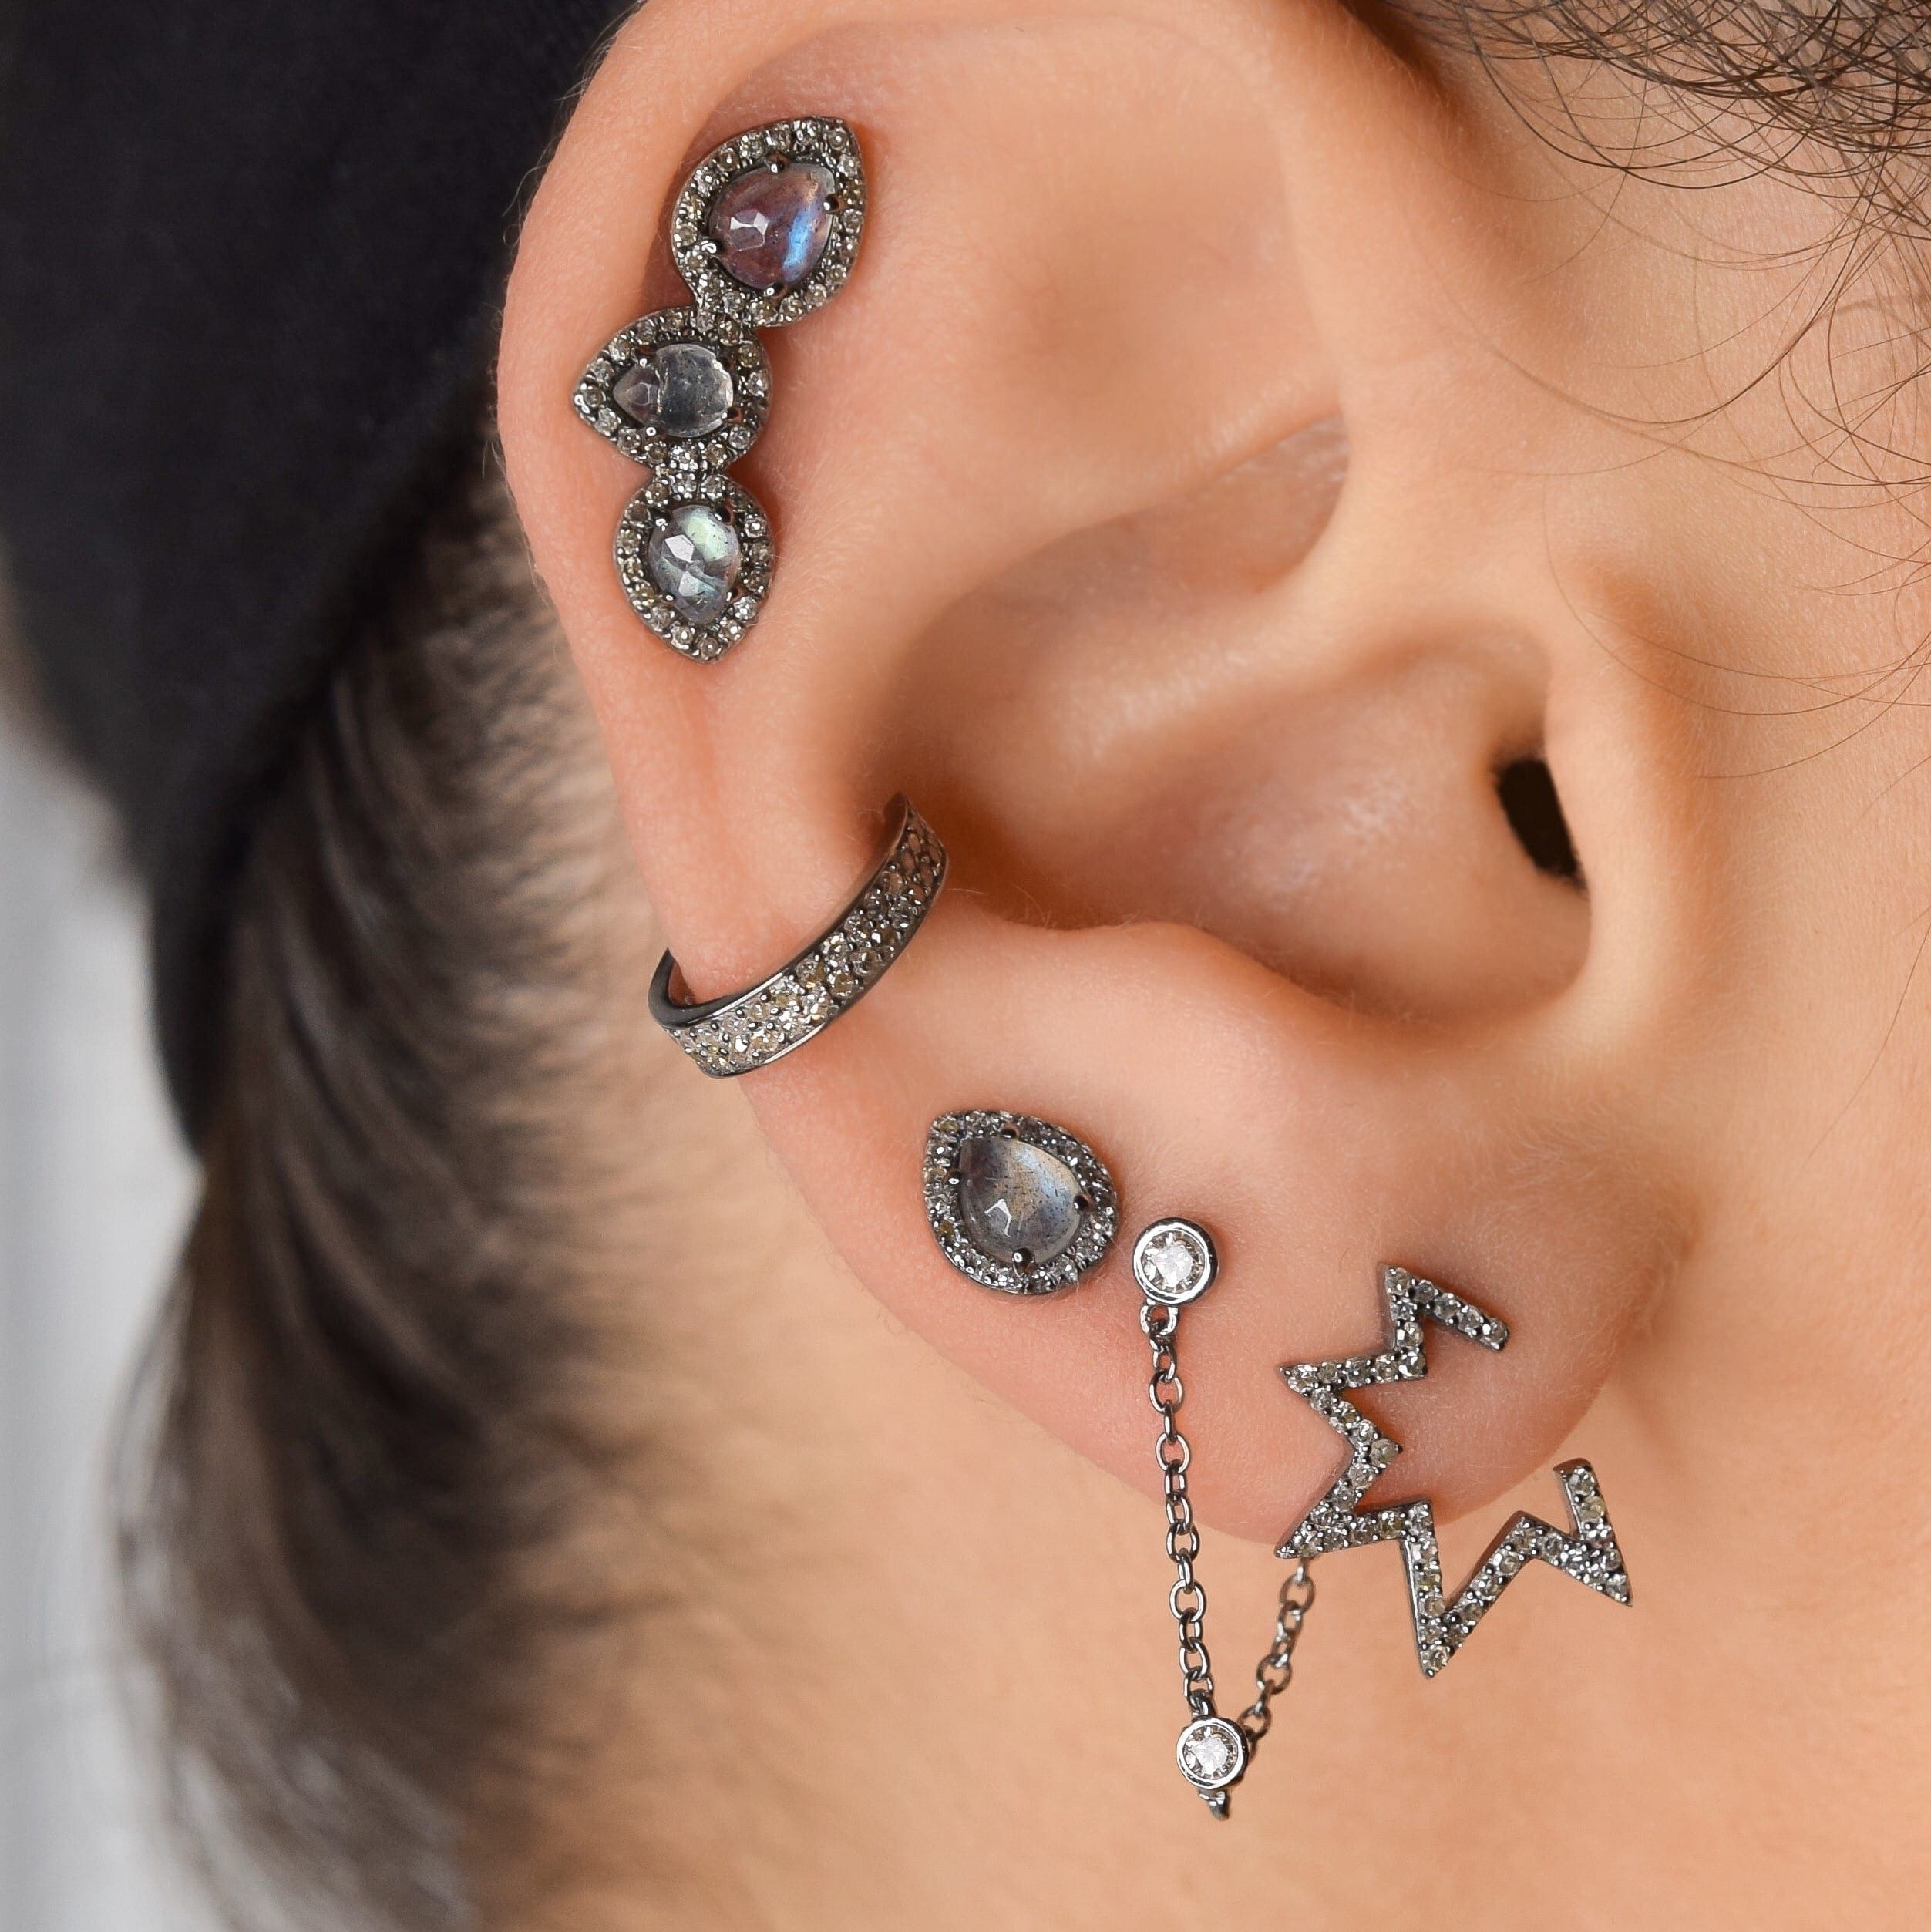 Small Open Mod Diamond Star Earrings